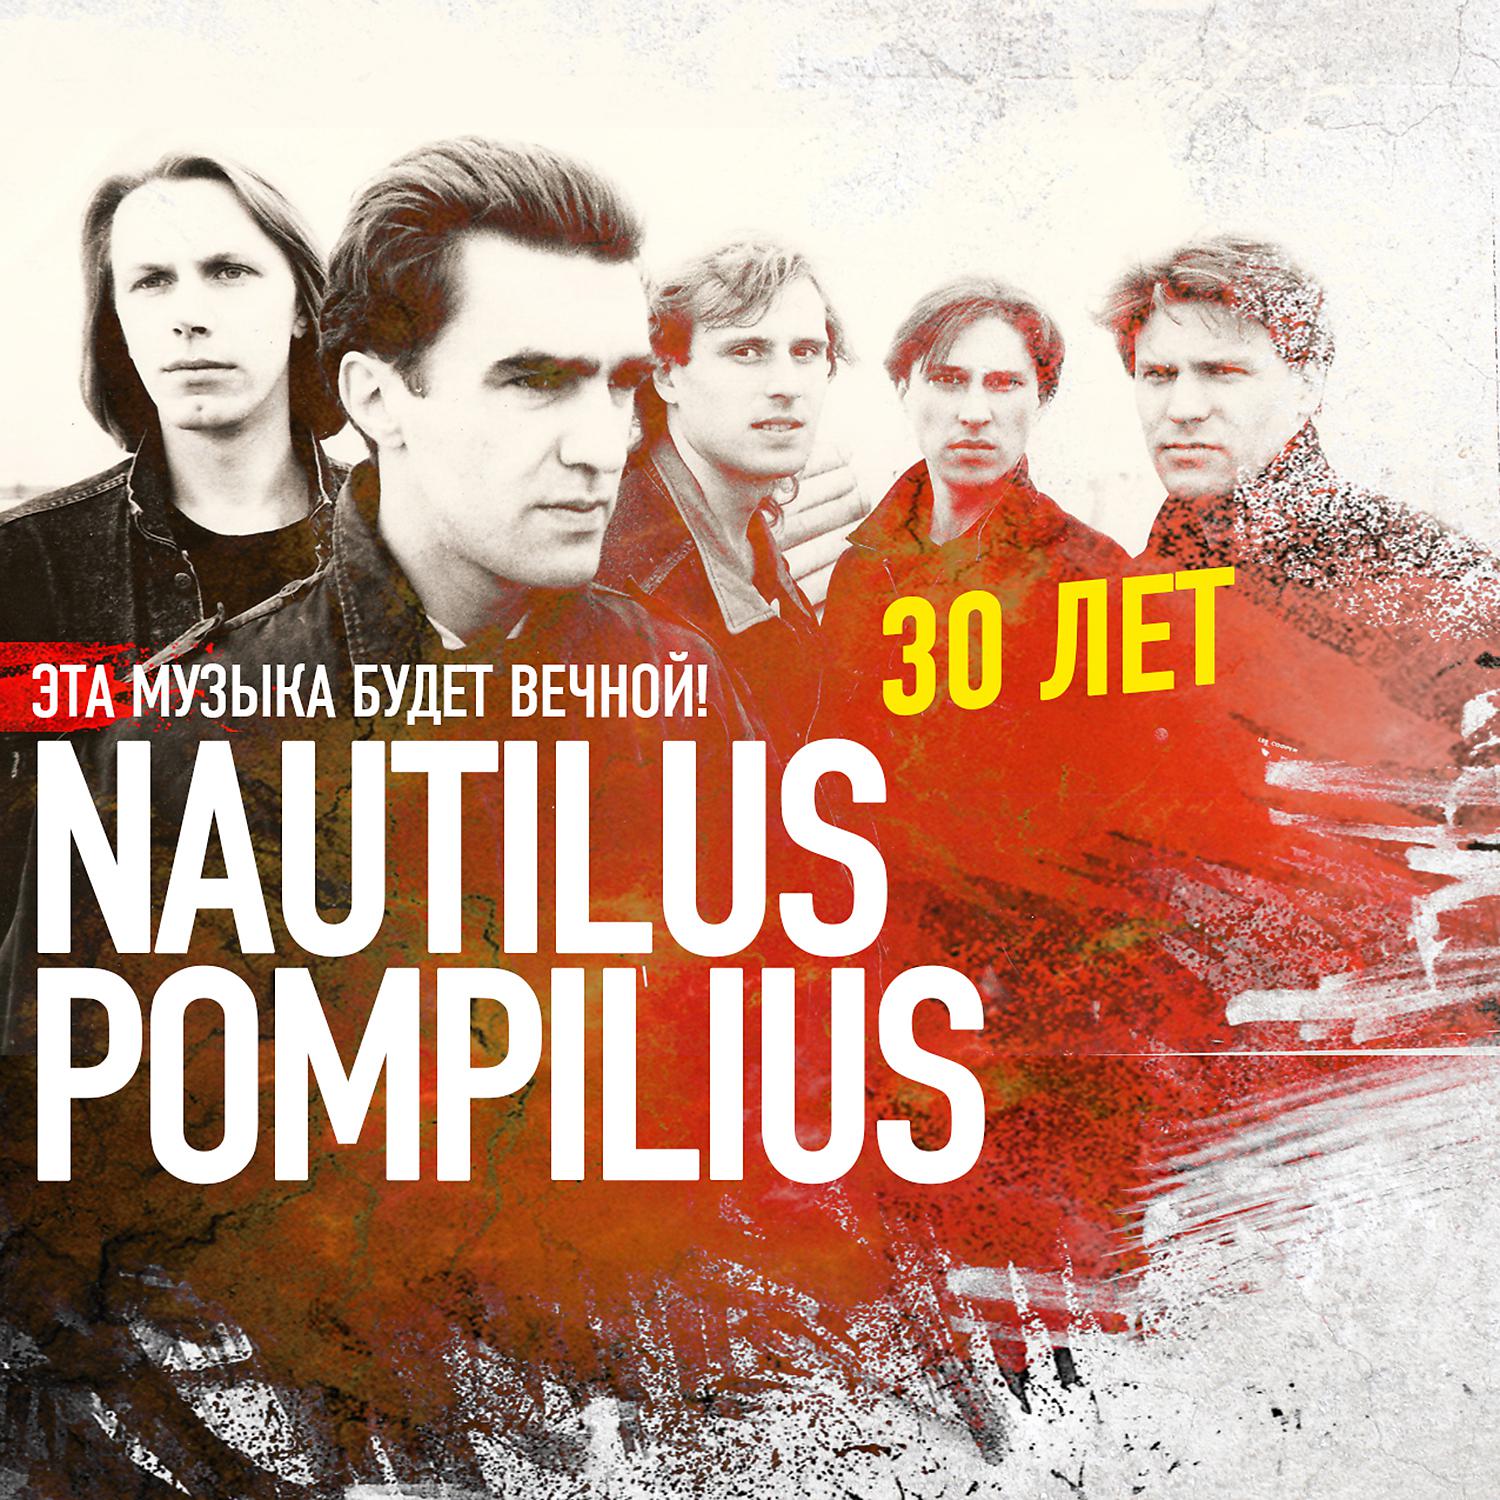 Помпилиус дыхание слушать. Наутилус Помпилиус. Наутилус группа. Наутилус 1992. Группа Nautilus Pompilius плакат.